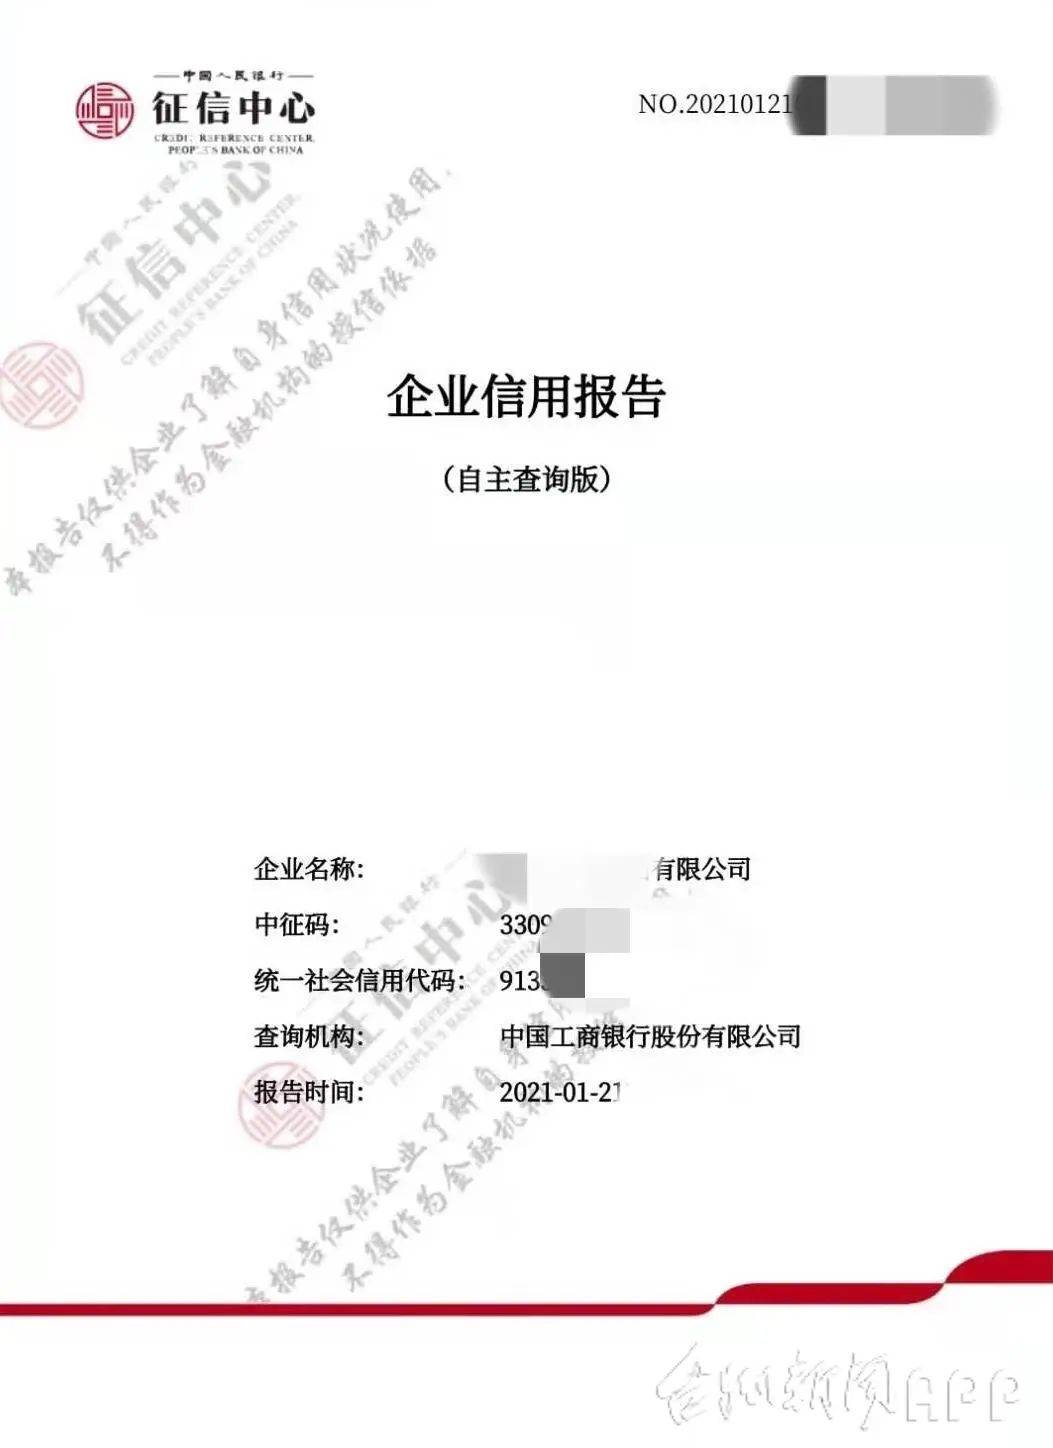 台州企业,年审季信用报告线上查询打印更便利